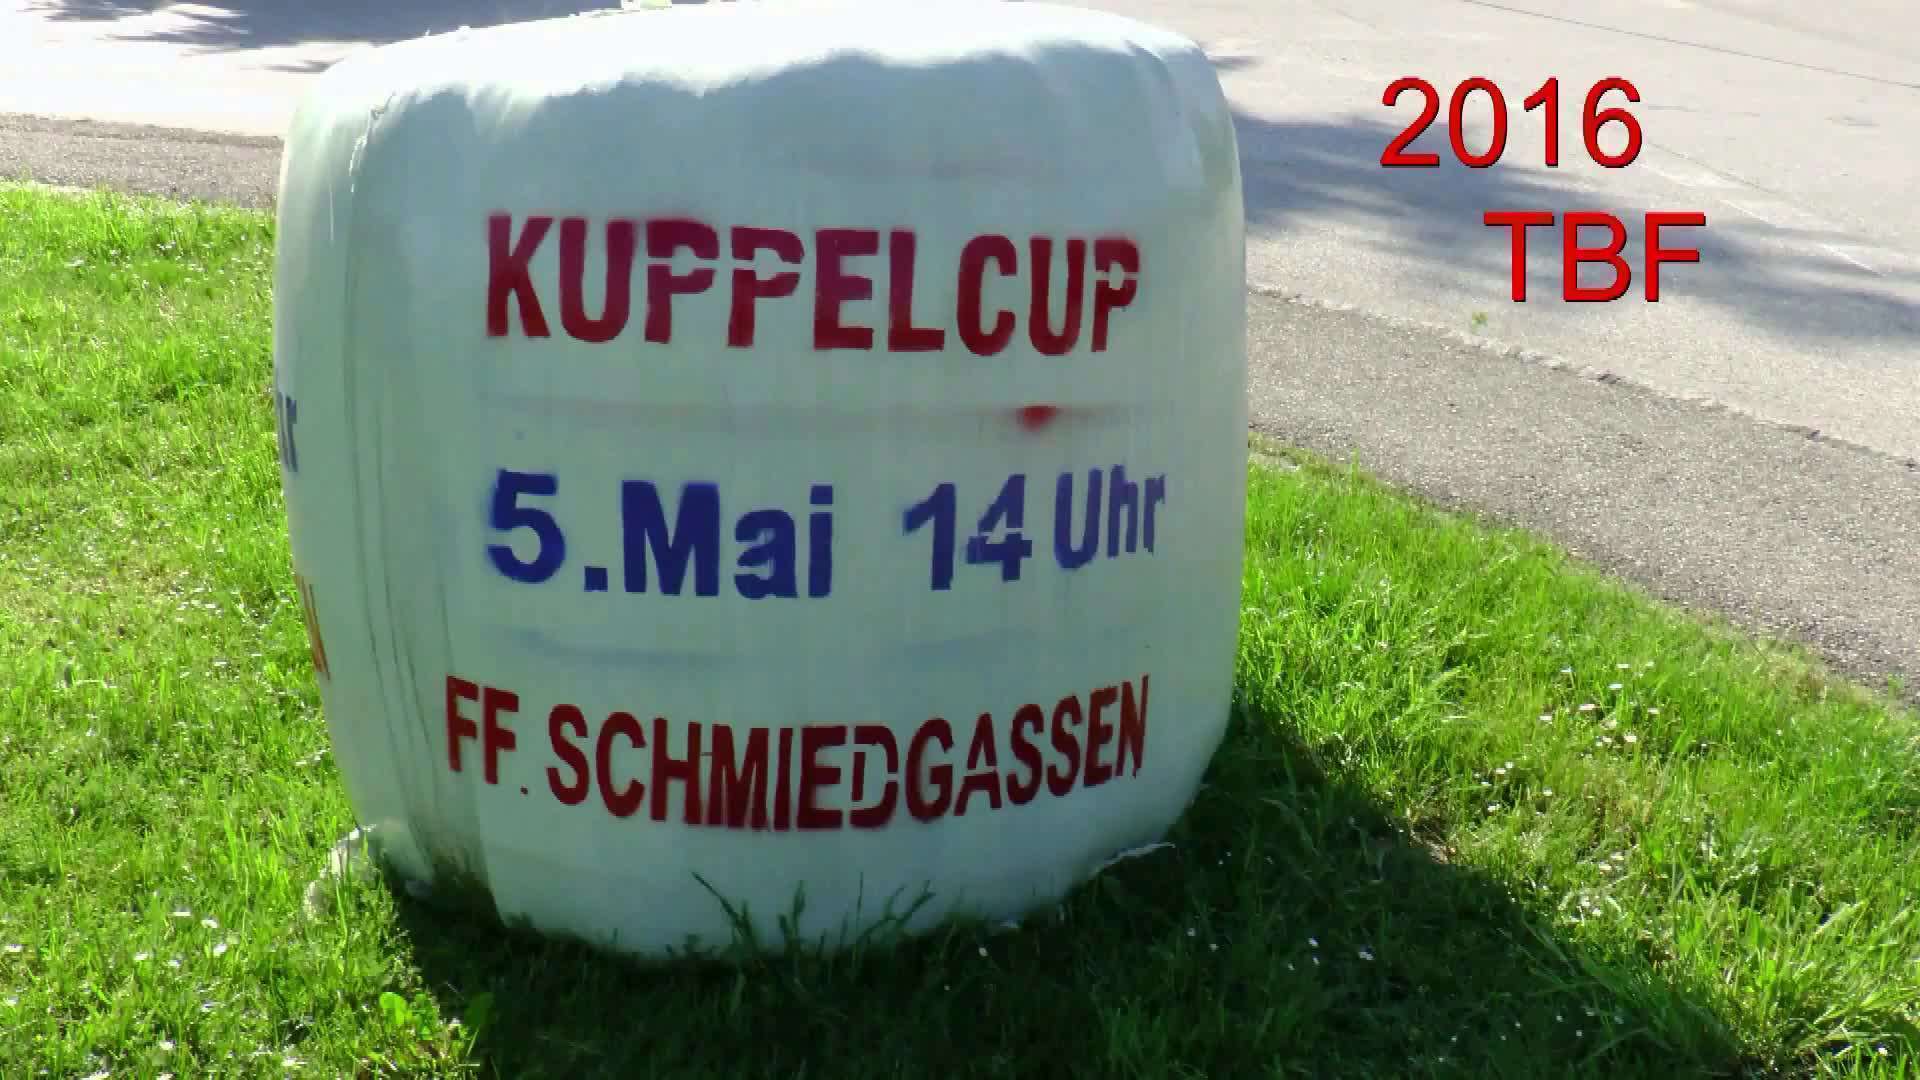 Kuppelcup 2016 FF Schmiedgassen